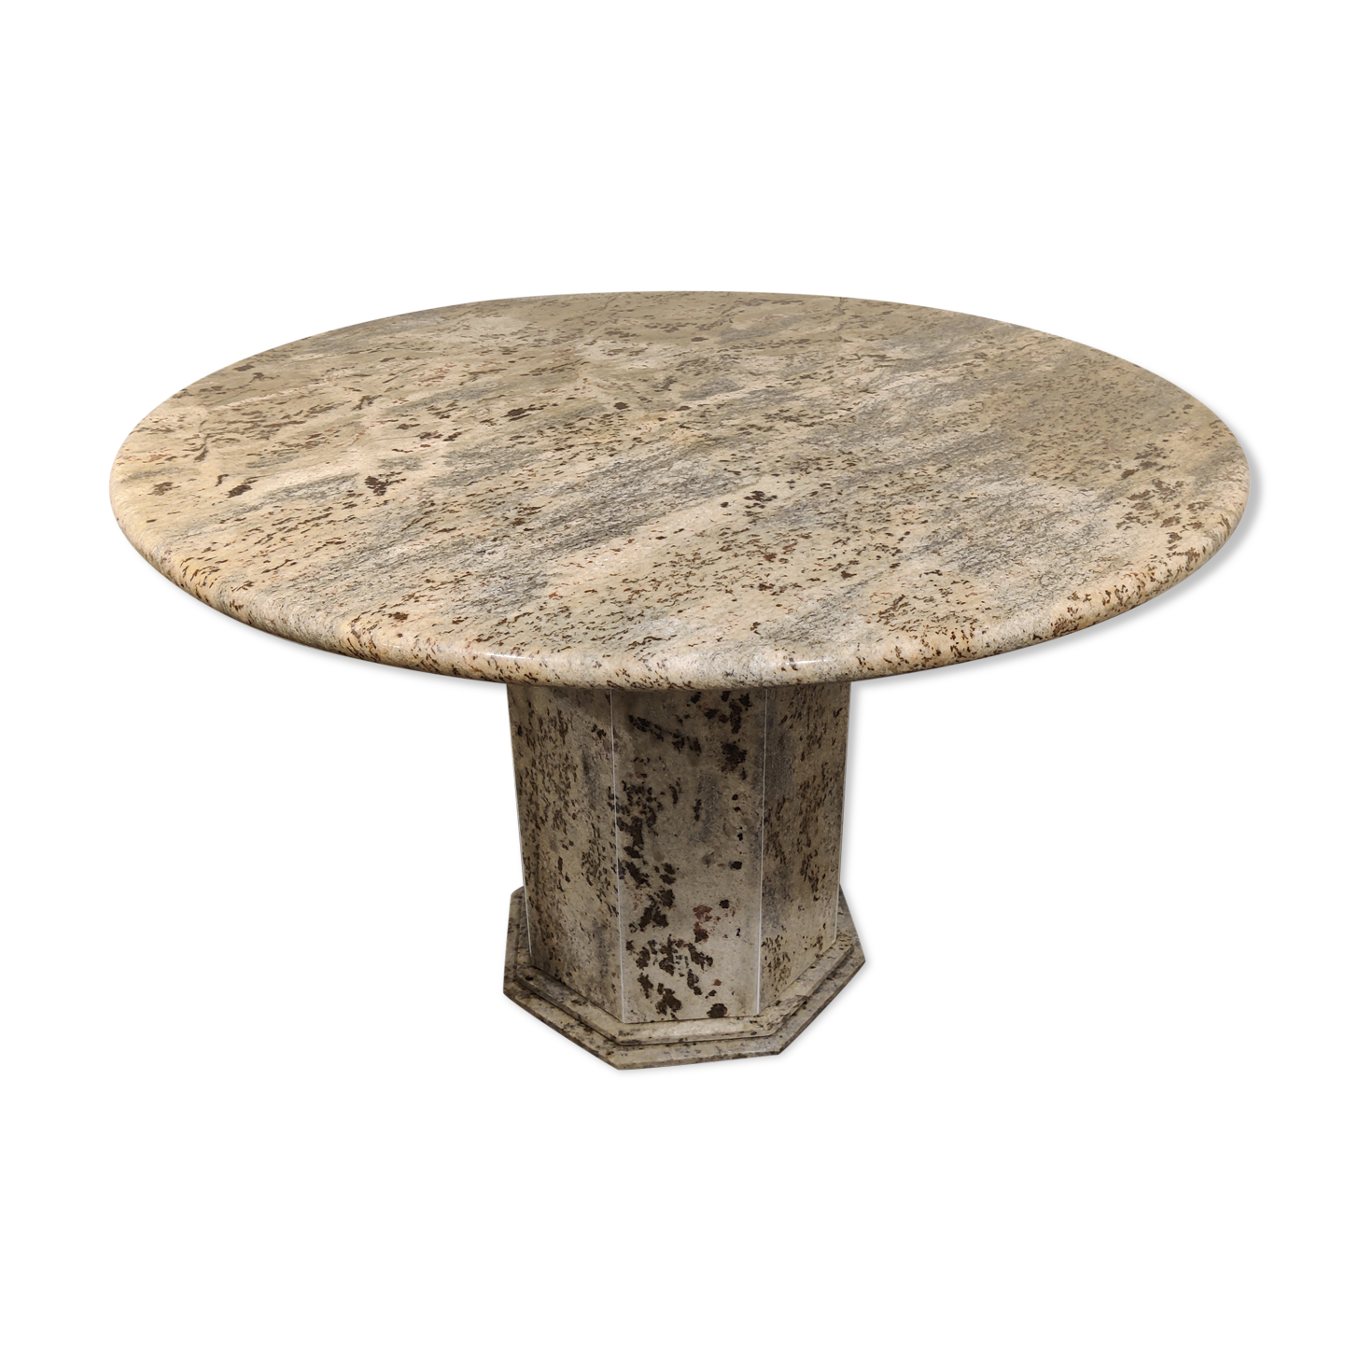  Table  centrale ronde  vintage de granit  ann es 70 Selency